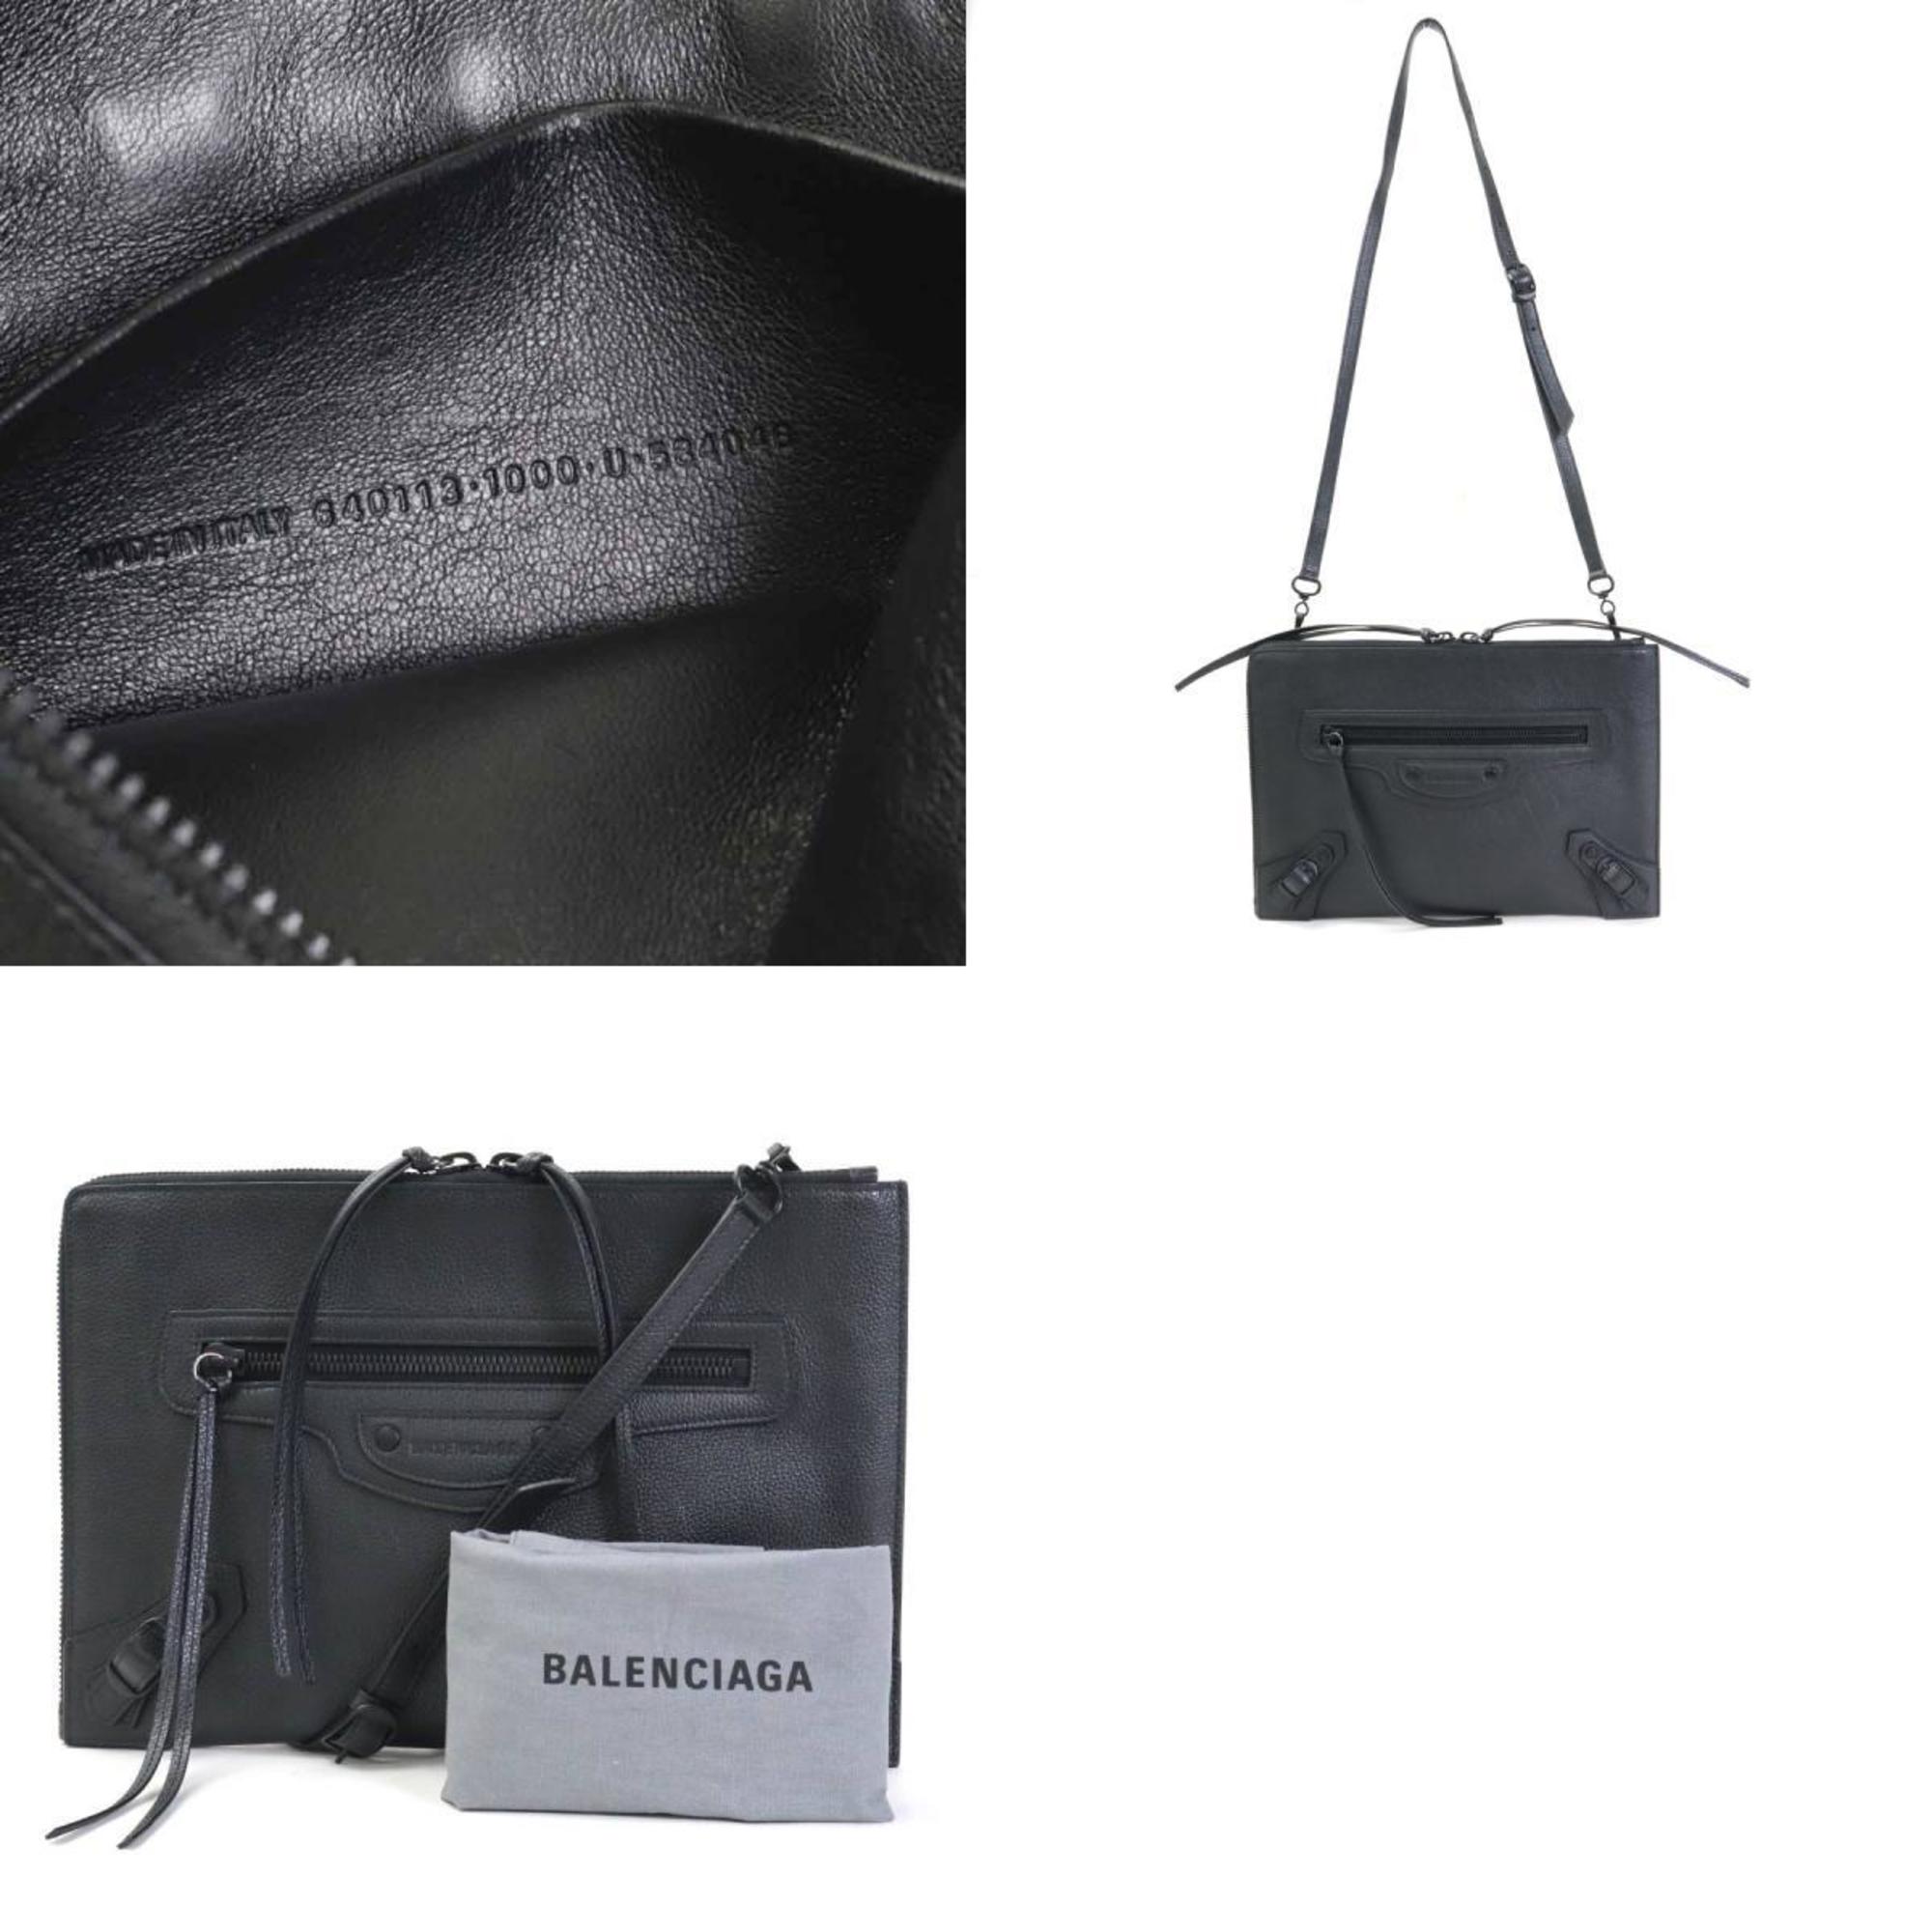 Balenciaga BALENCIAGA diagonal shoulder bag clutch neoclassic city leather black unisex e55875g